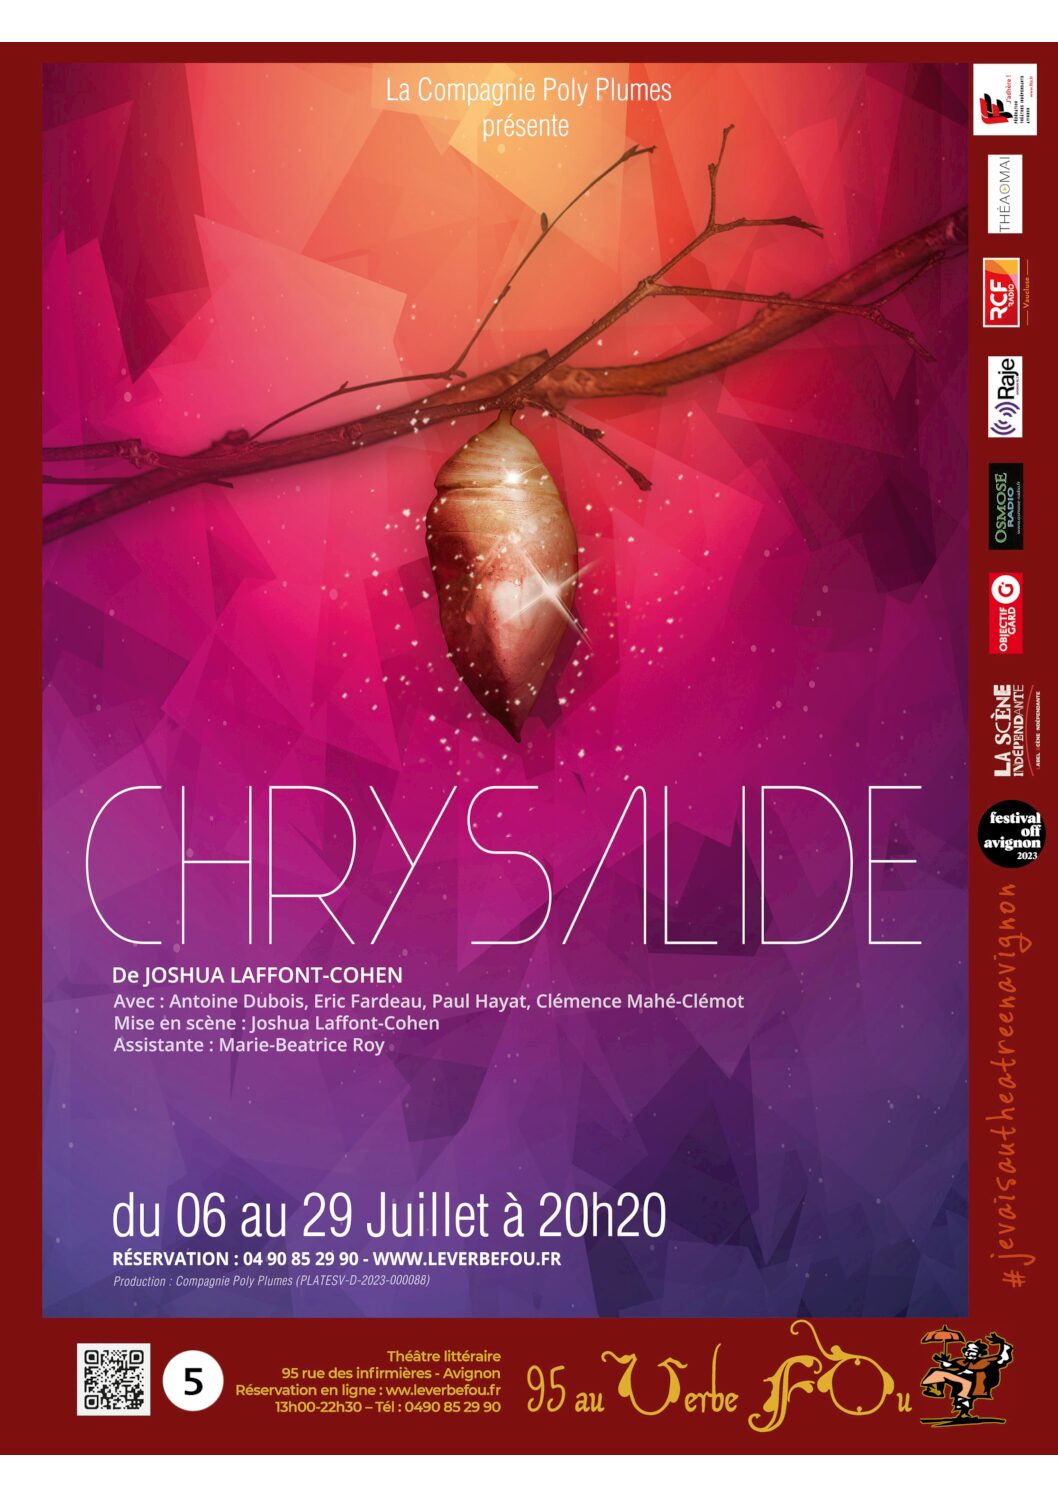 affiche chrysalide pdf Chrysalide : Une pièce de théâtre drôle et émouvante qui nous fait réfléchir